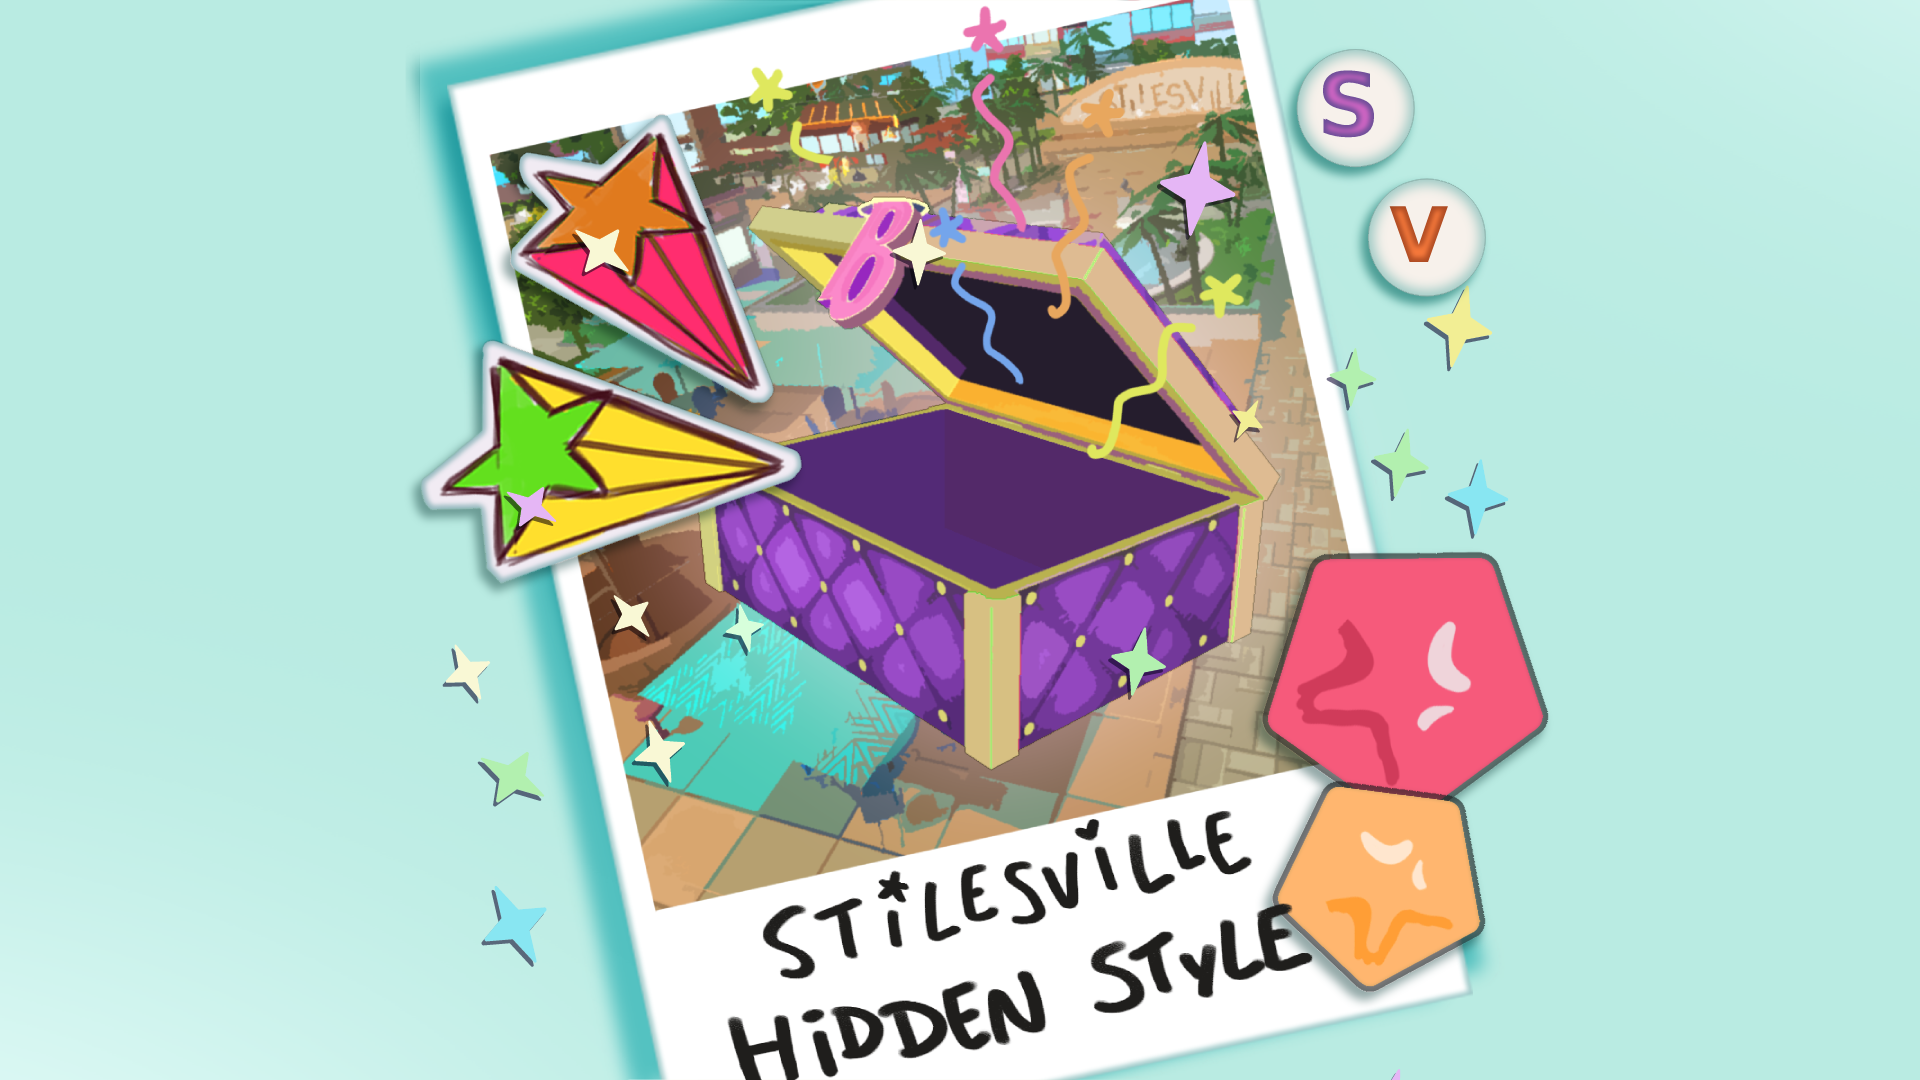 Stilesville Hidden Style